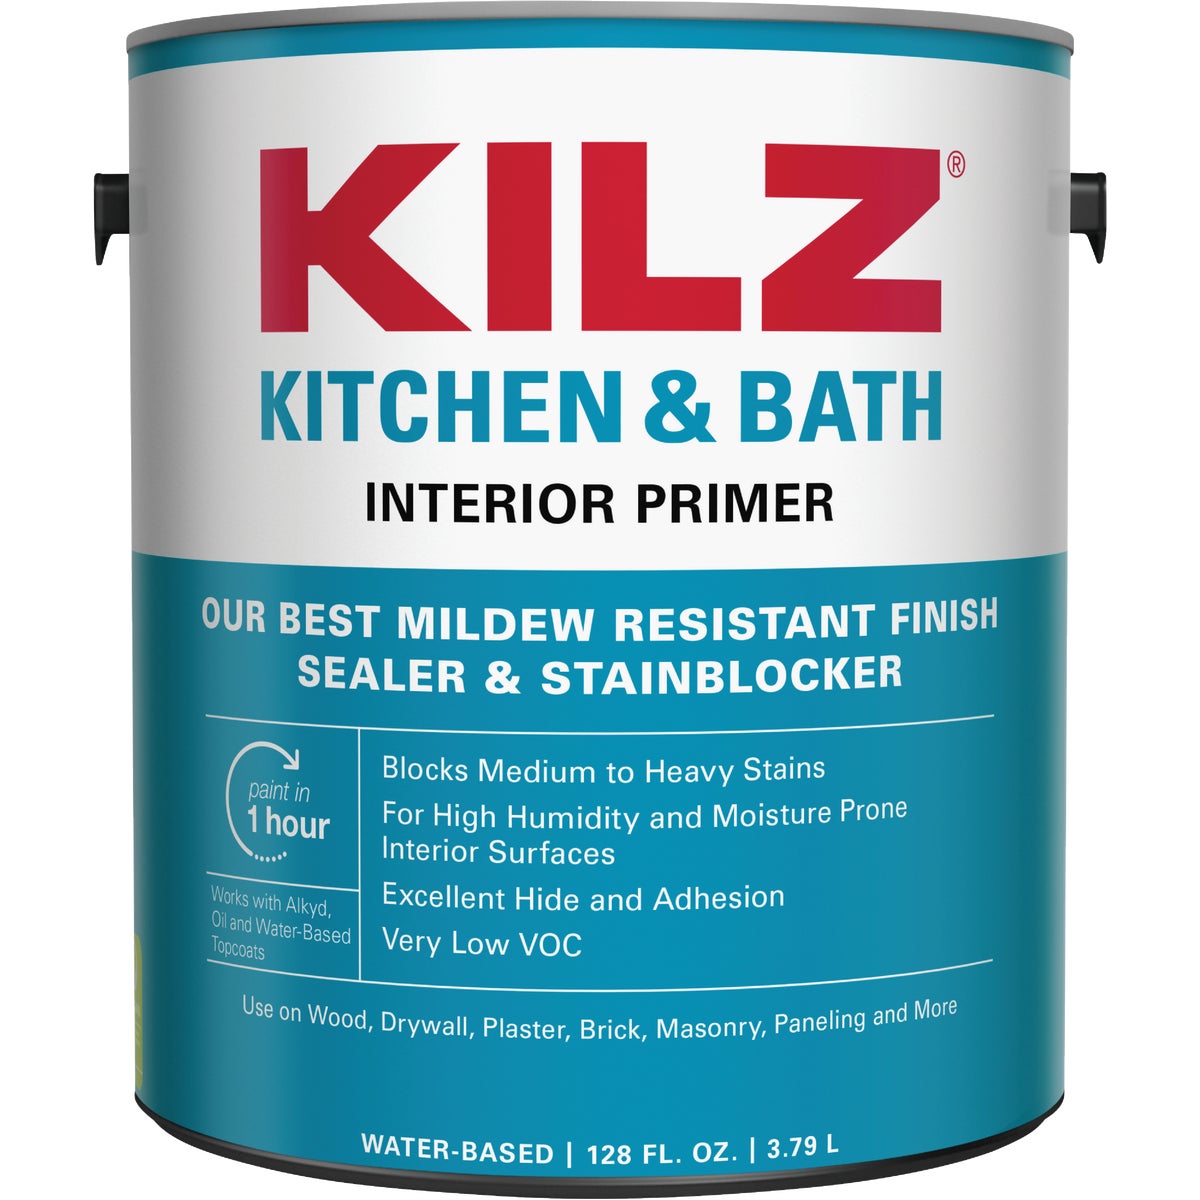 Item 771967, KILZ Kitchen &amp; Bath Primer is a high quality water based primer-sealer-